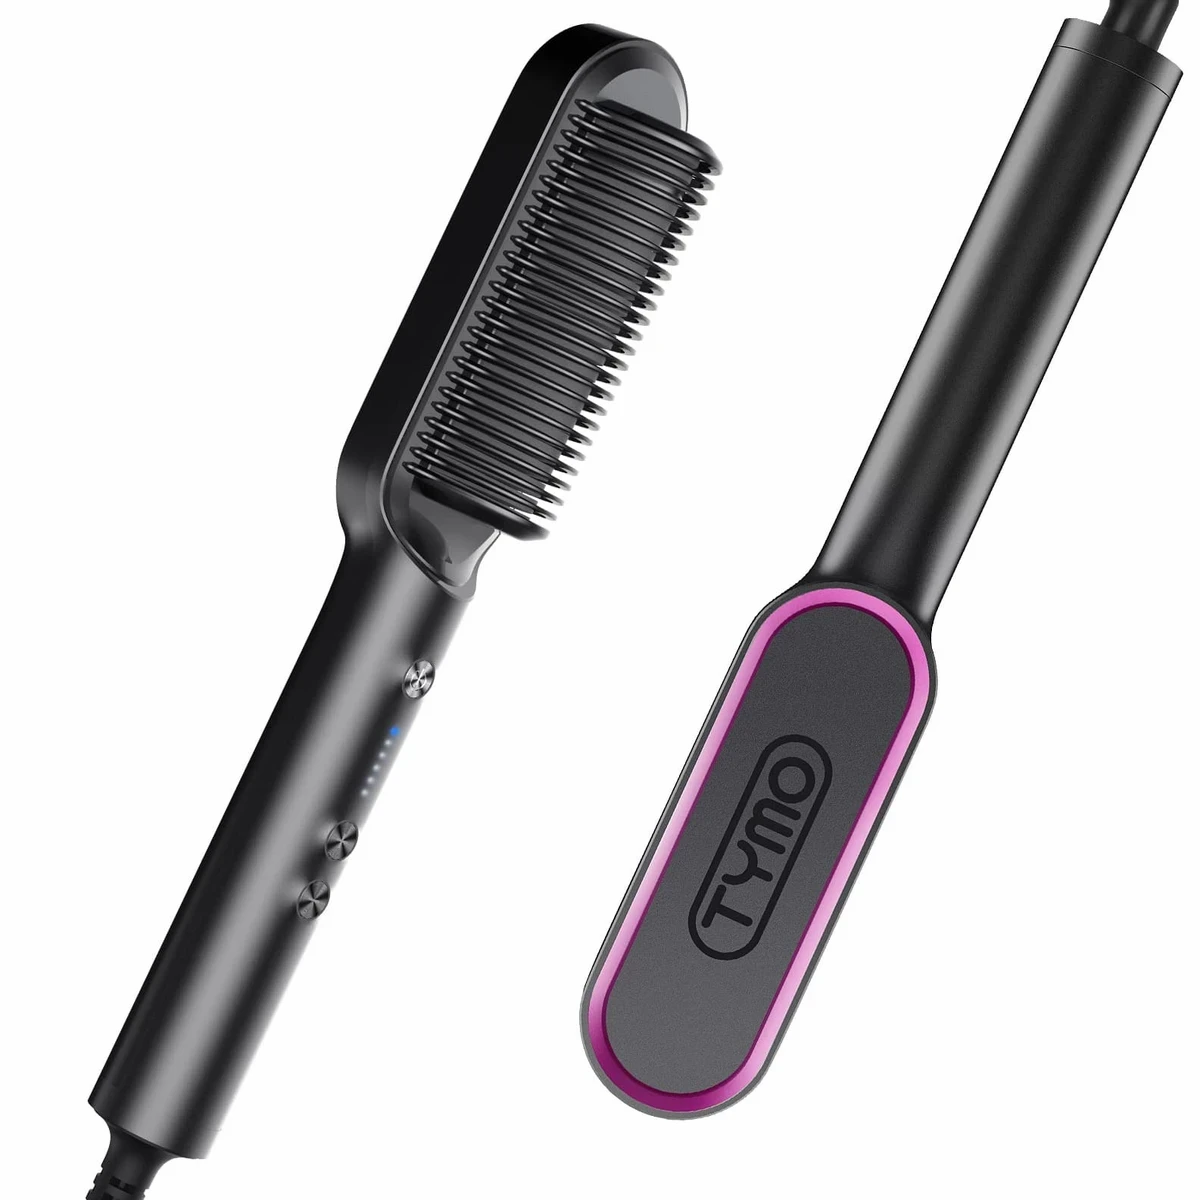 Smart hair straightener brush